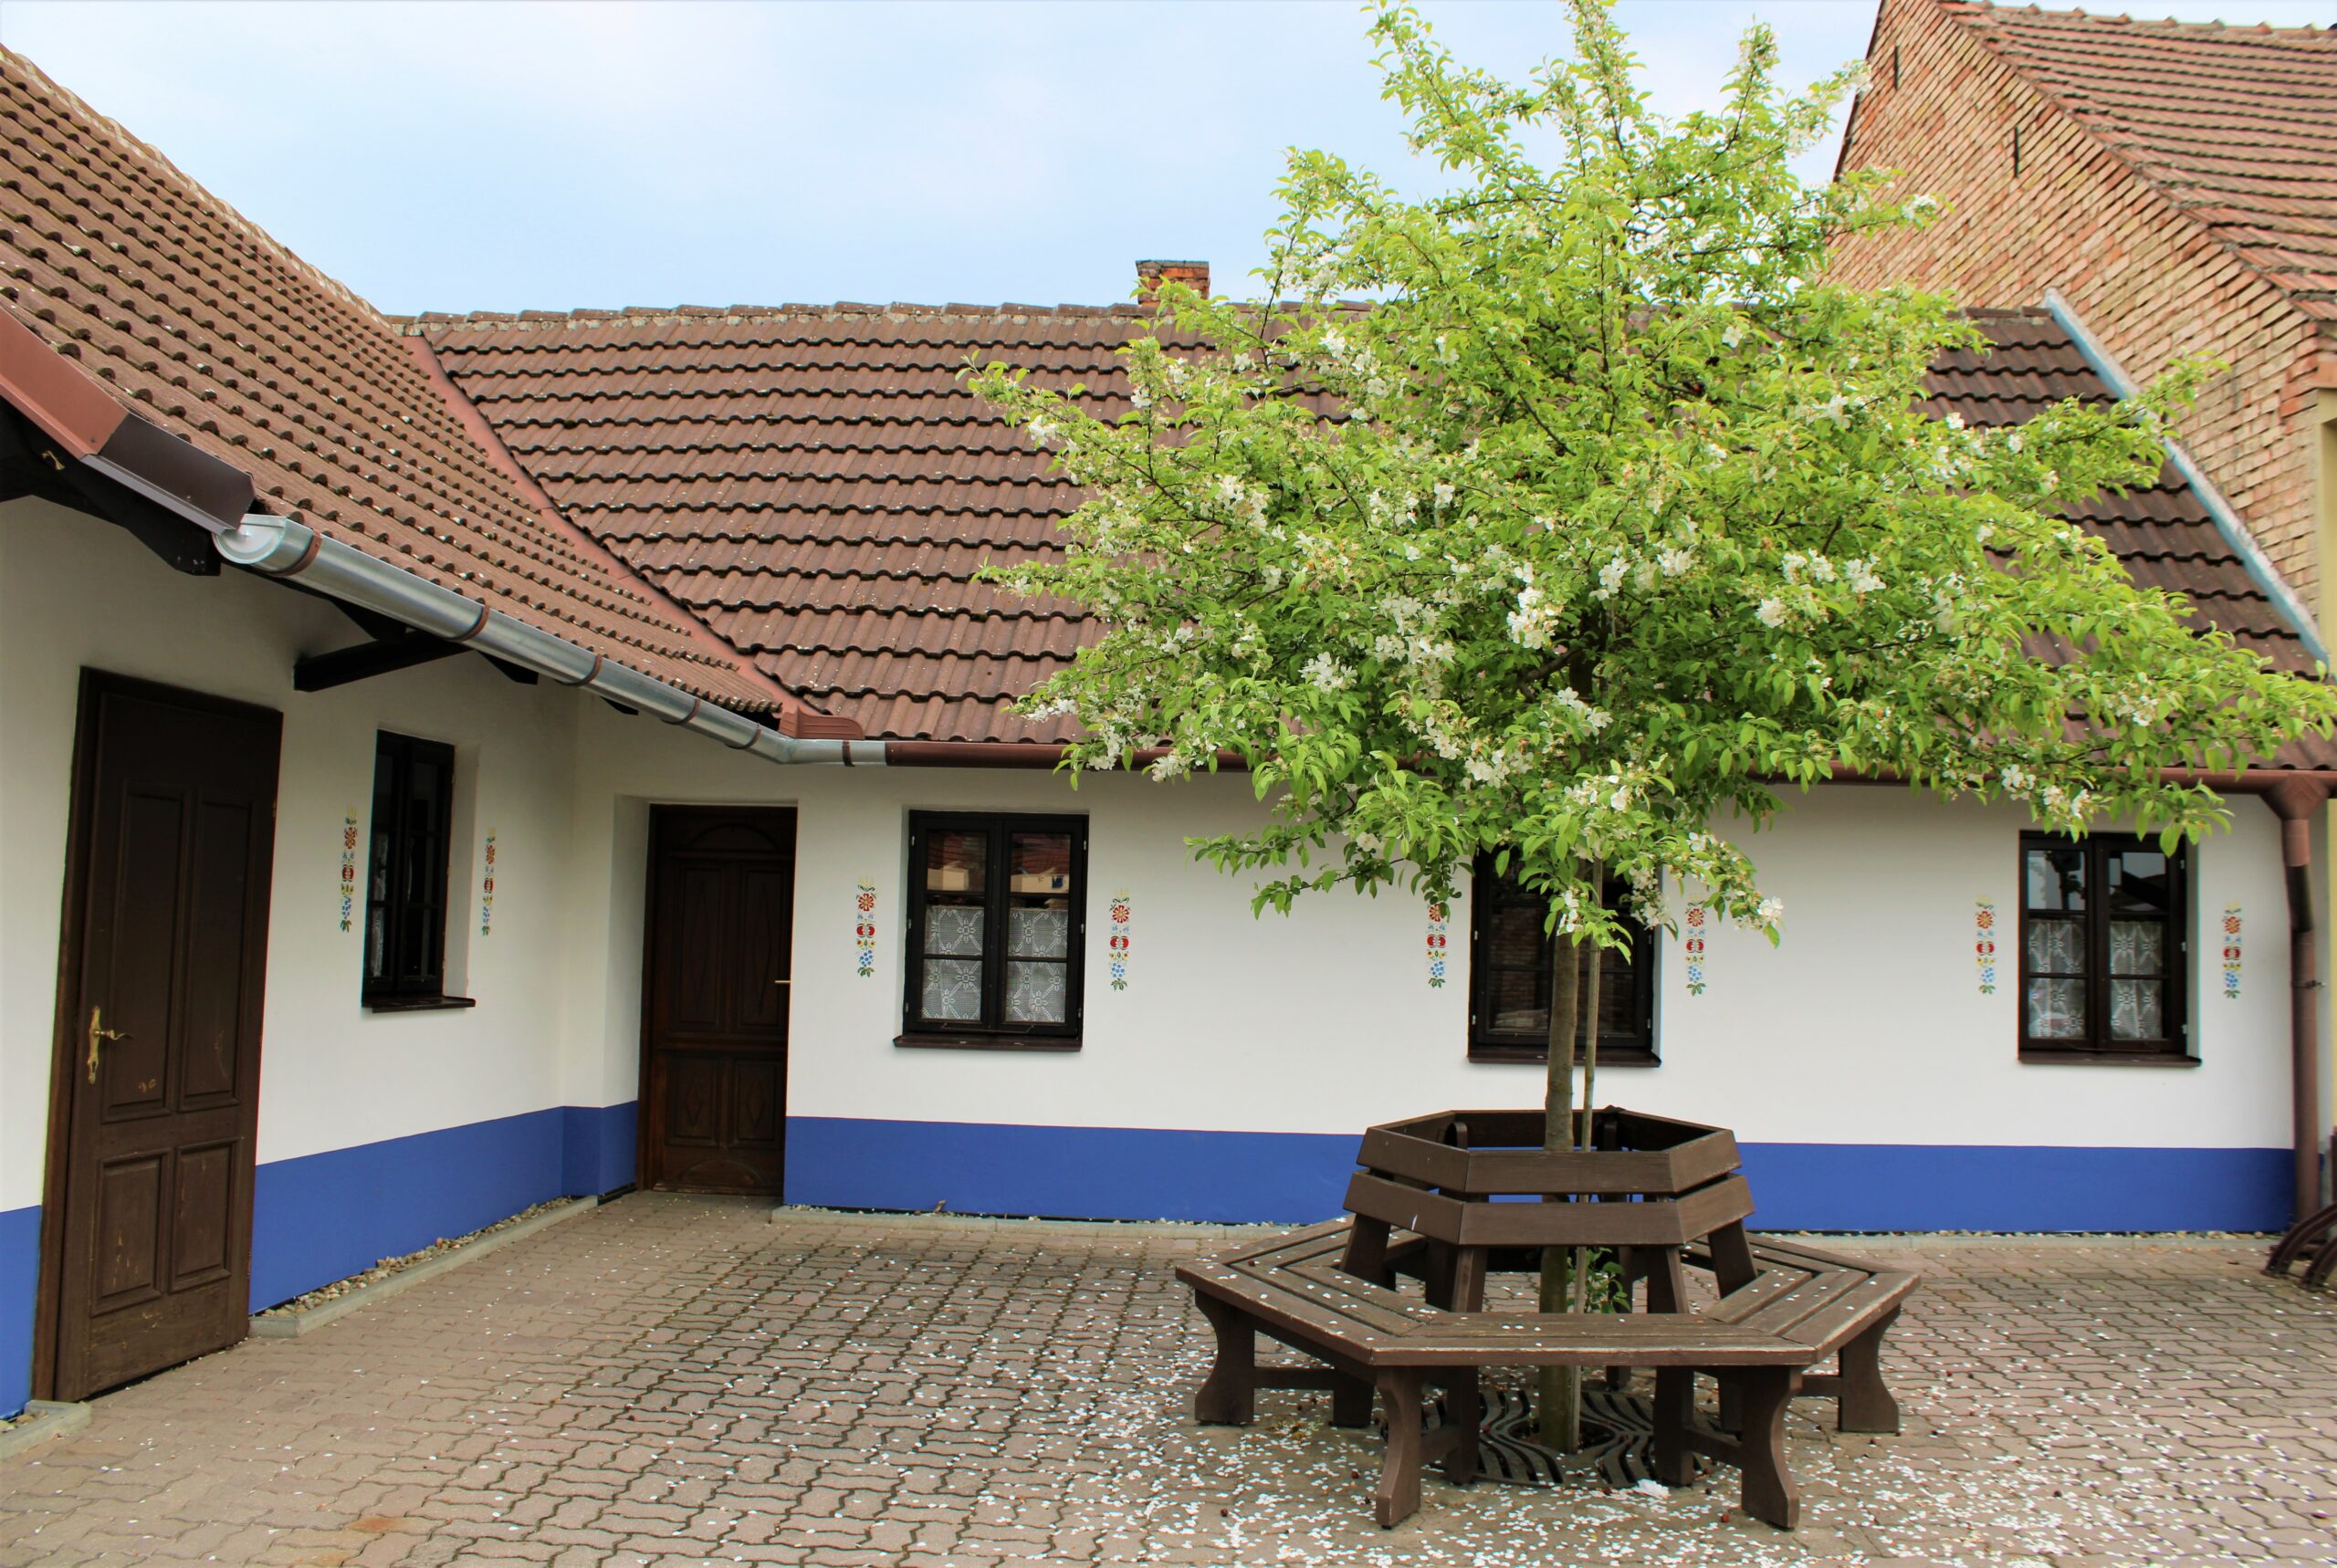 Více než padesát malých muzeí Slovácka společně opět otevře vrátka